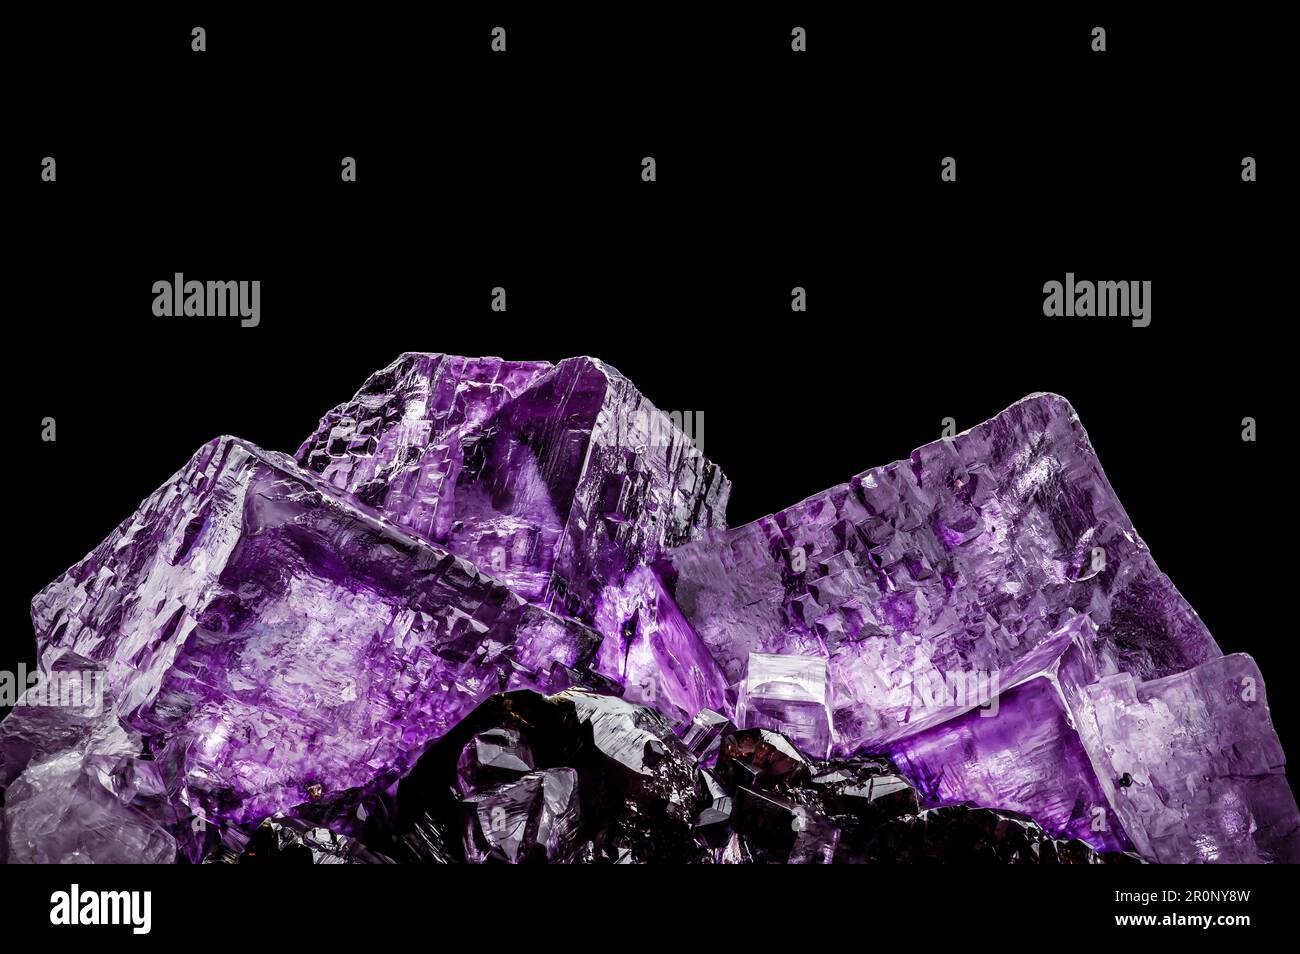 Violetter Fluorit (auch Flussspat genannt) Trunkenkristall.  Texturhintergrund für Makrodetails. Nahaufnahme von rohem, unpoliertem  Halbedelstein Stockfotografie - Alamy